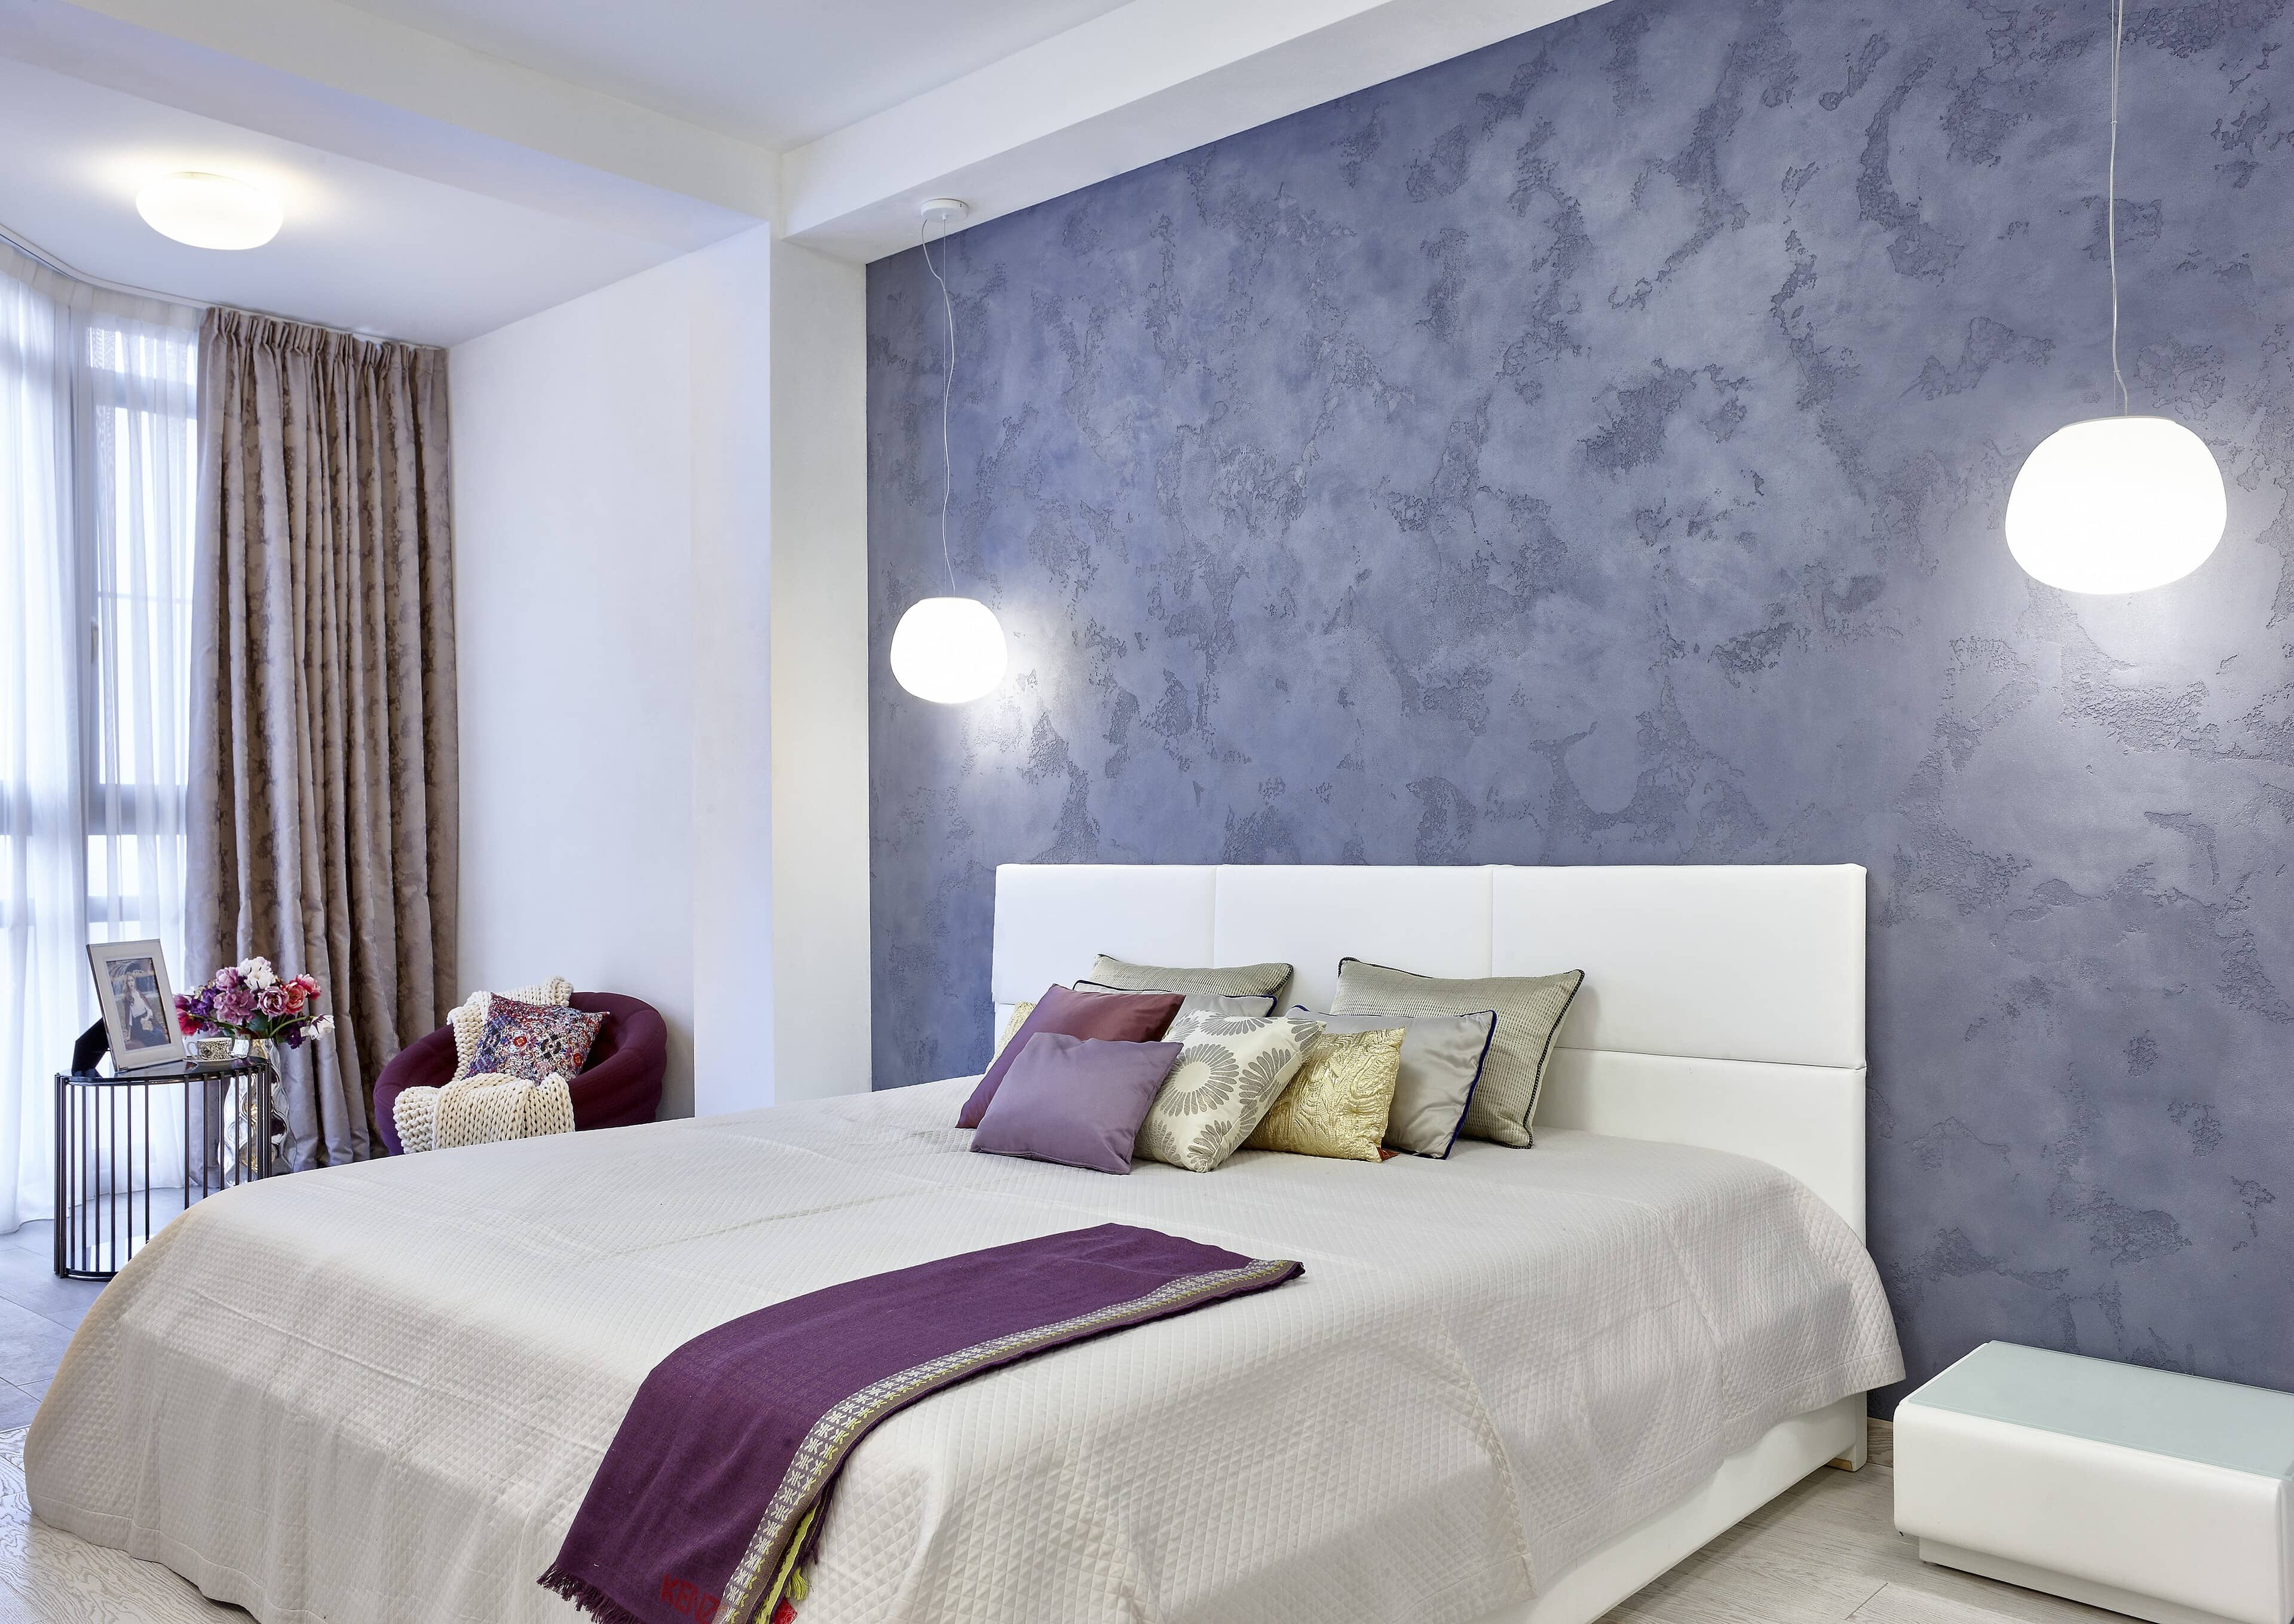 Современная спальня с деталями оттенков лилового и малинового цвета .